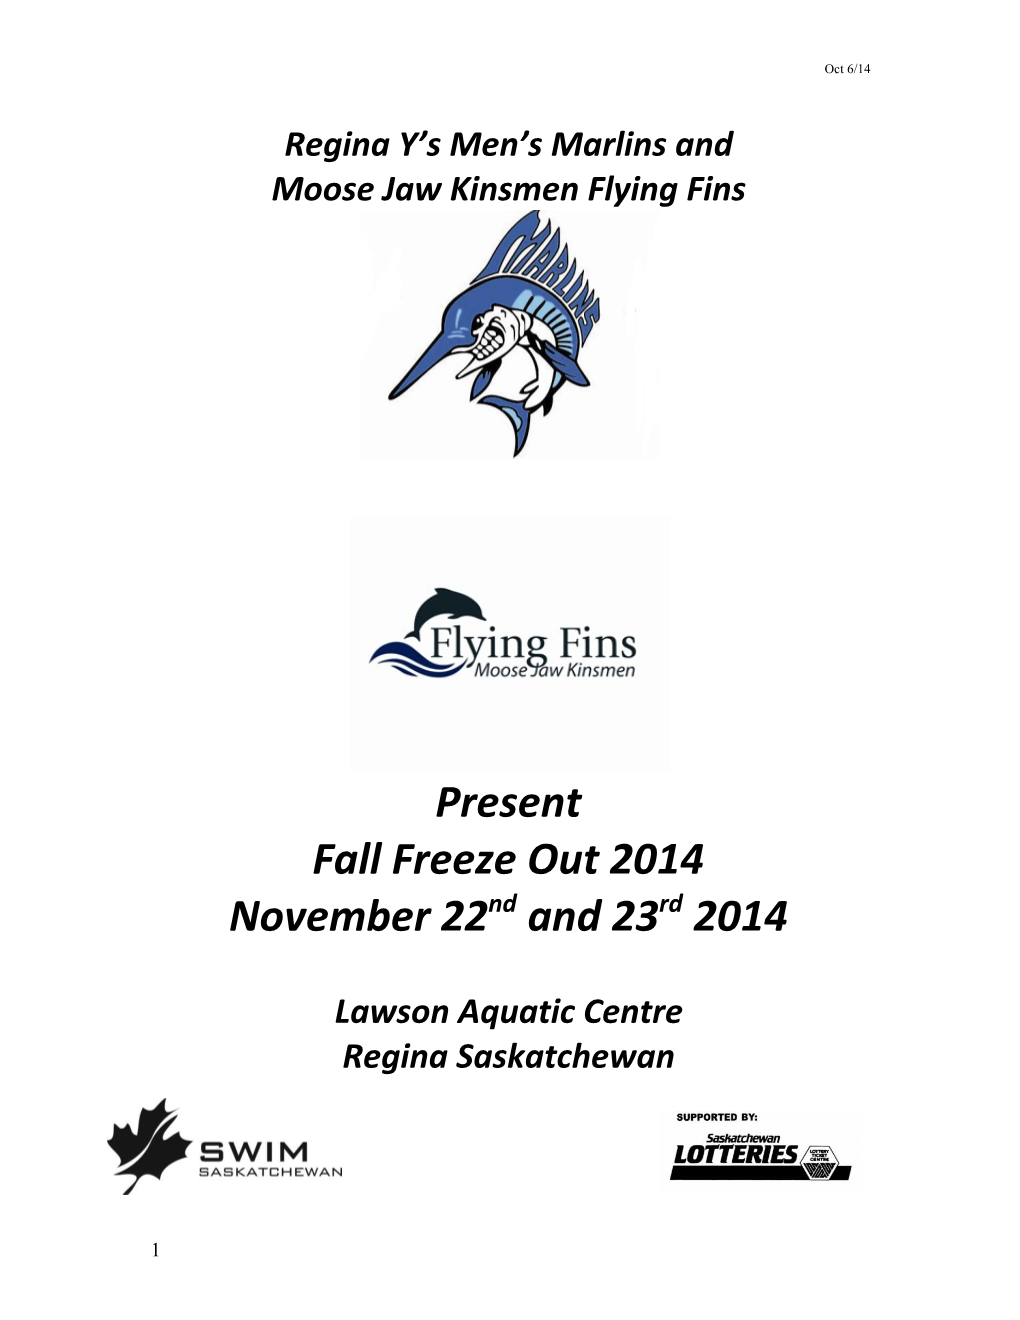 Moose Jaw Kinsmen Flying Fins